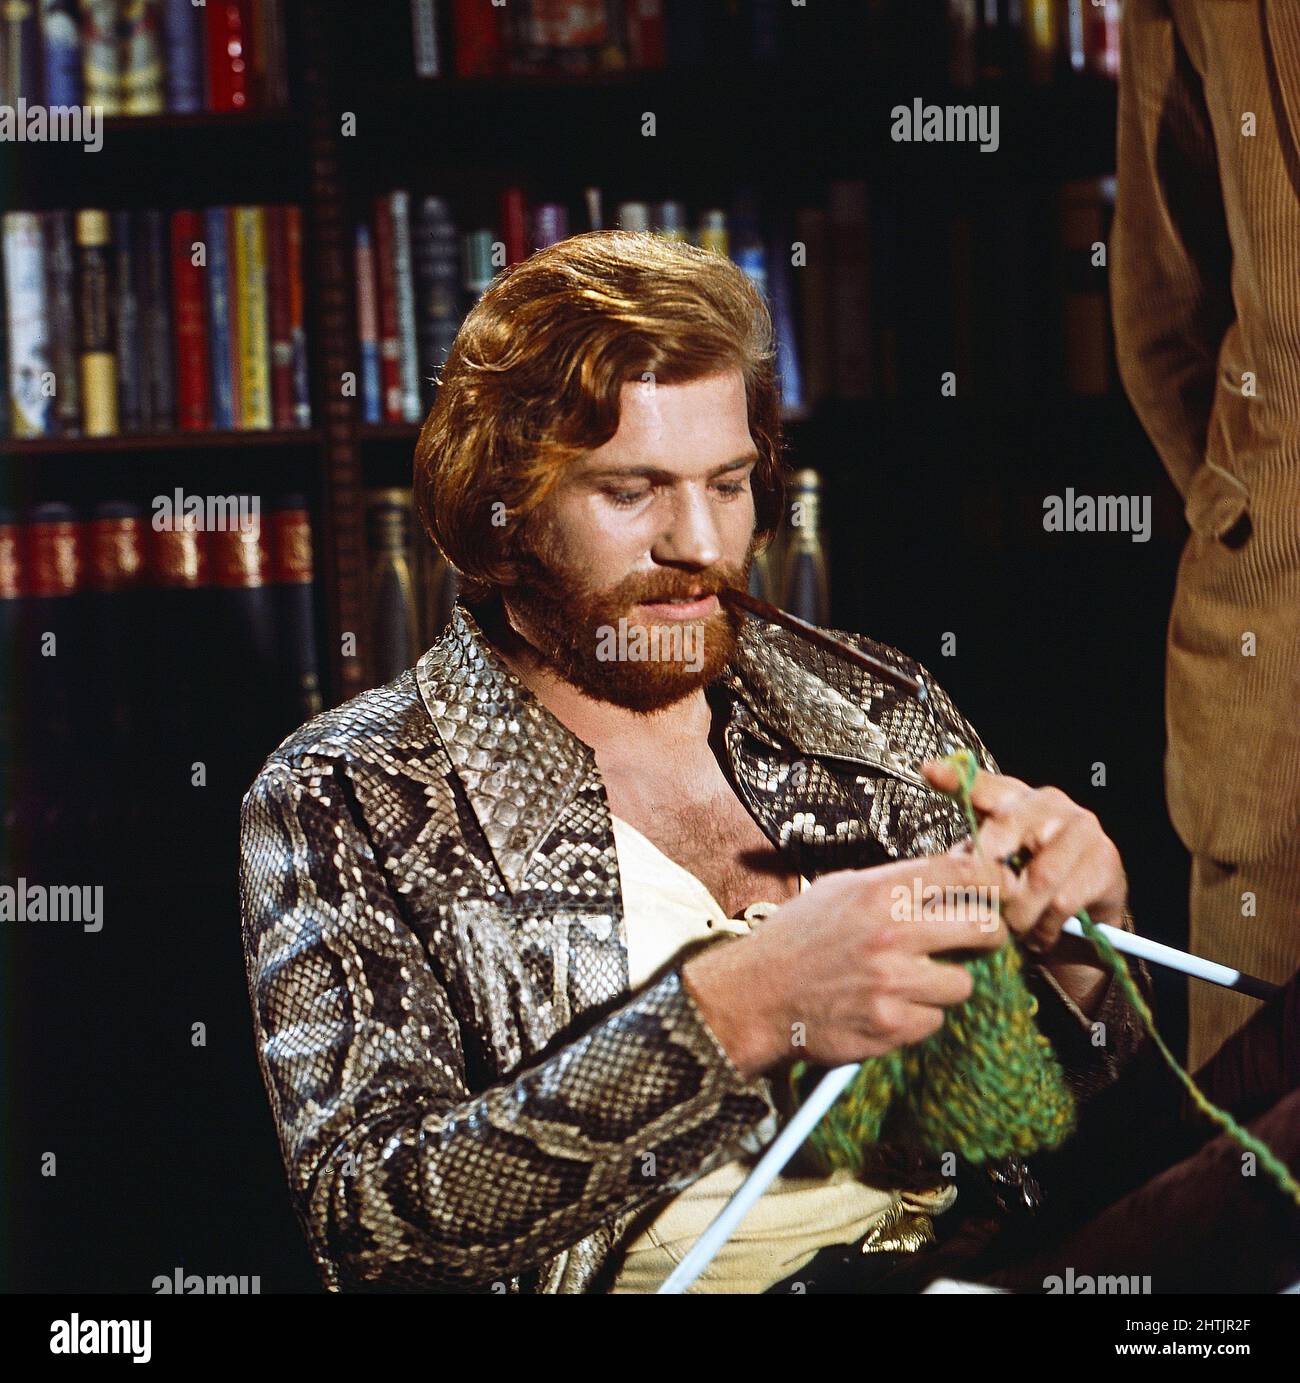 Lodynskis Flohmarkt Company, Fernsehserie, Österreich 1971, Stargast Raimund Harmstorf beim Stricken. Stock Photo